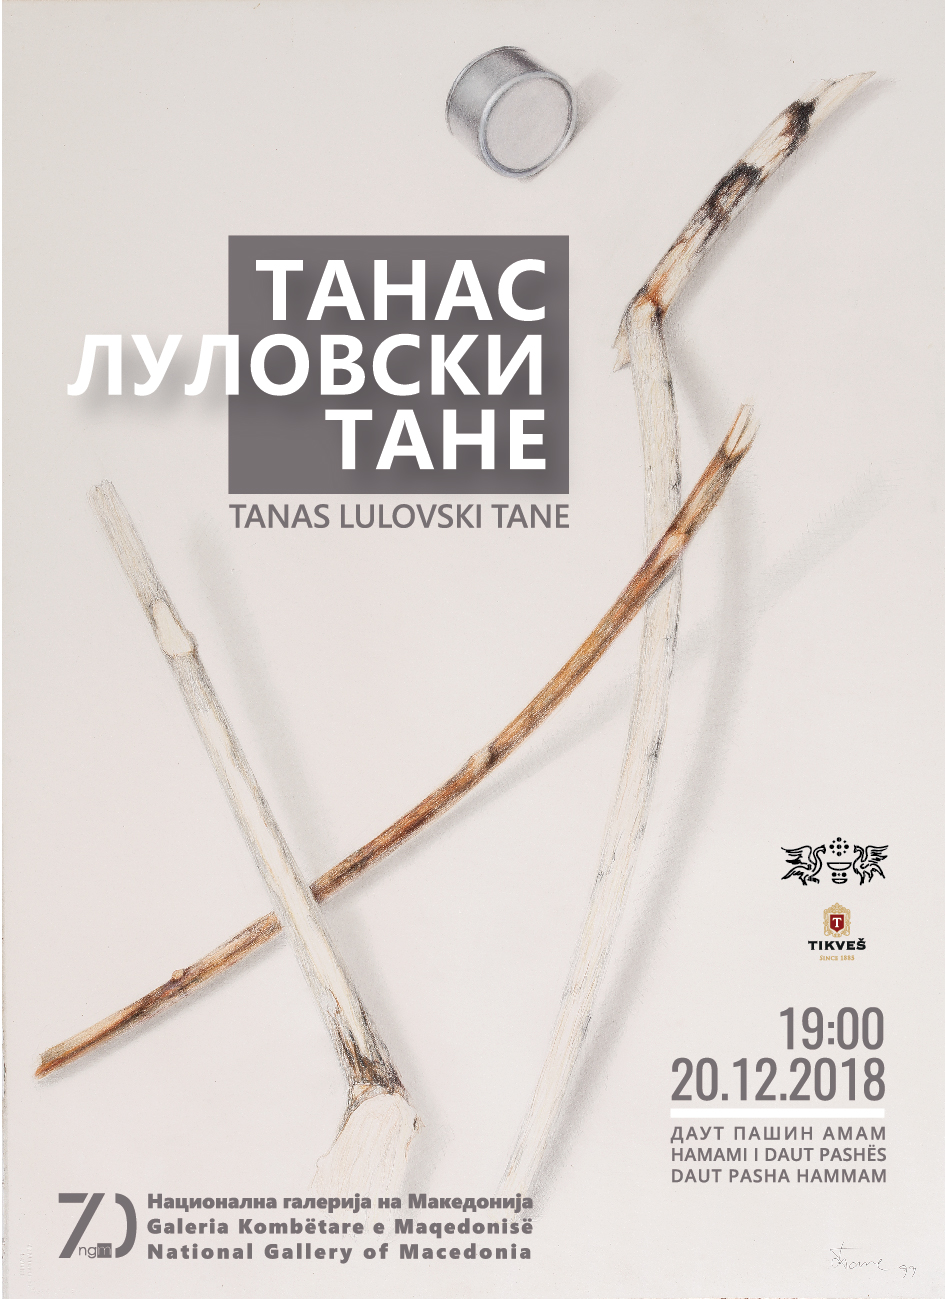 Ретроспективна изложба на Танас Луловски во Даут пашин амам